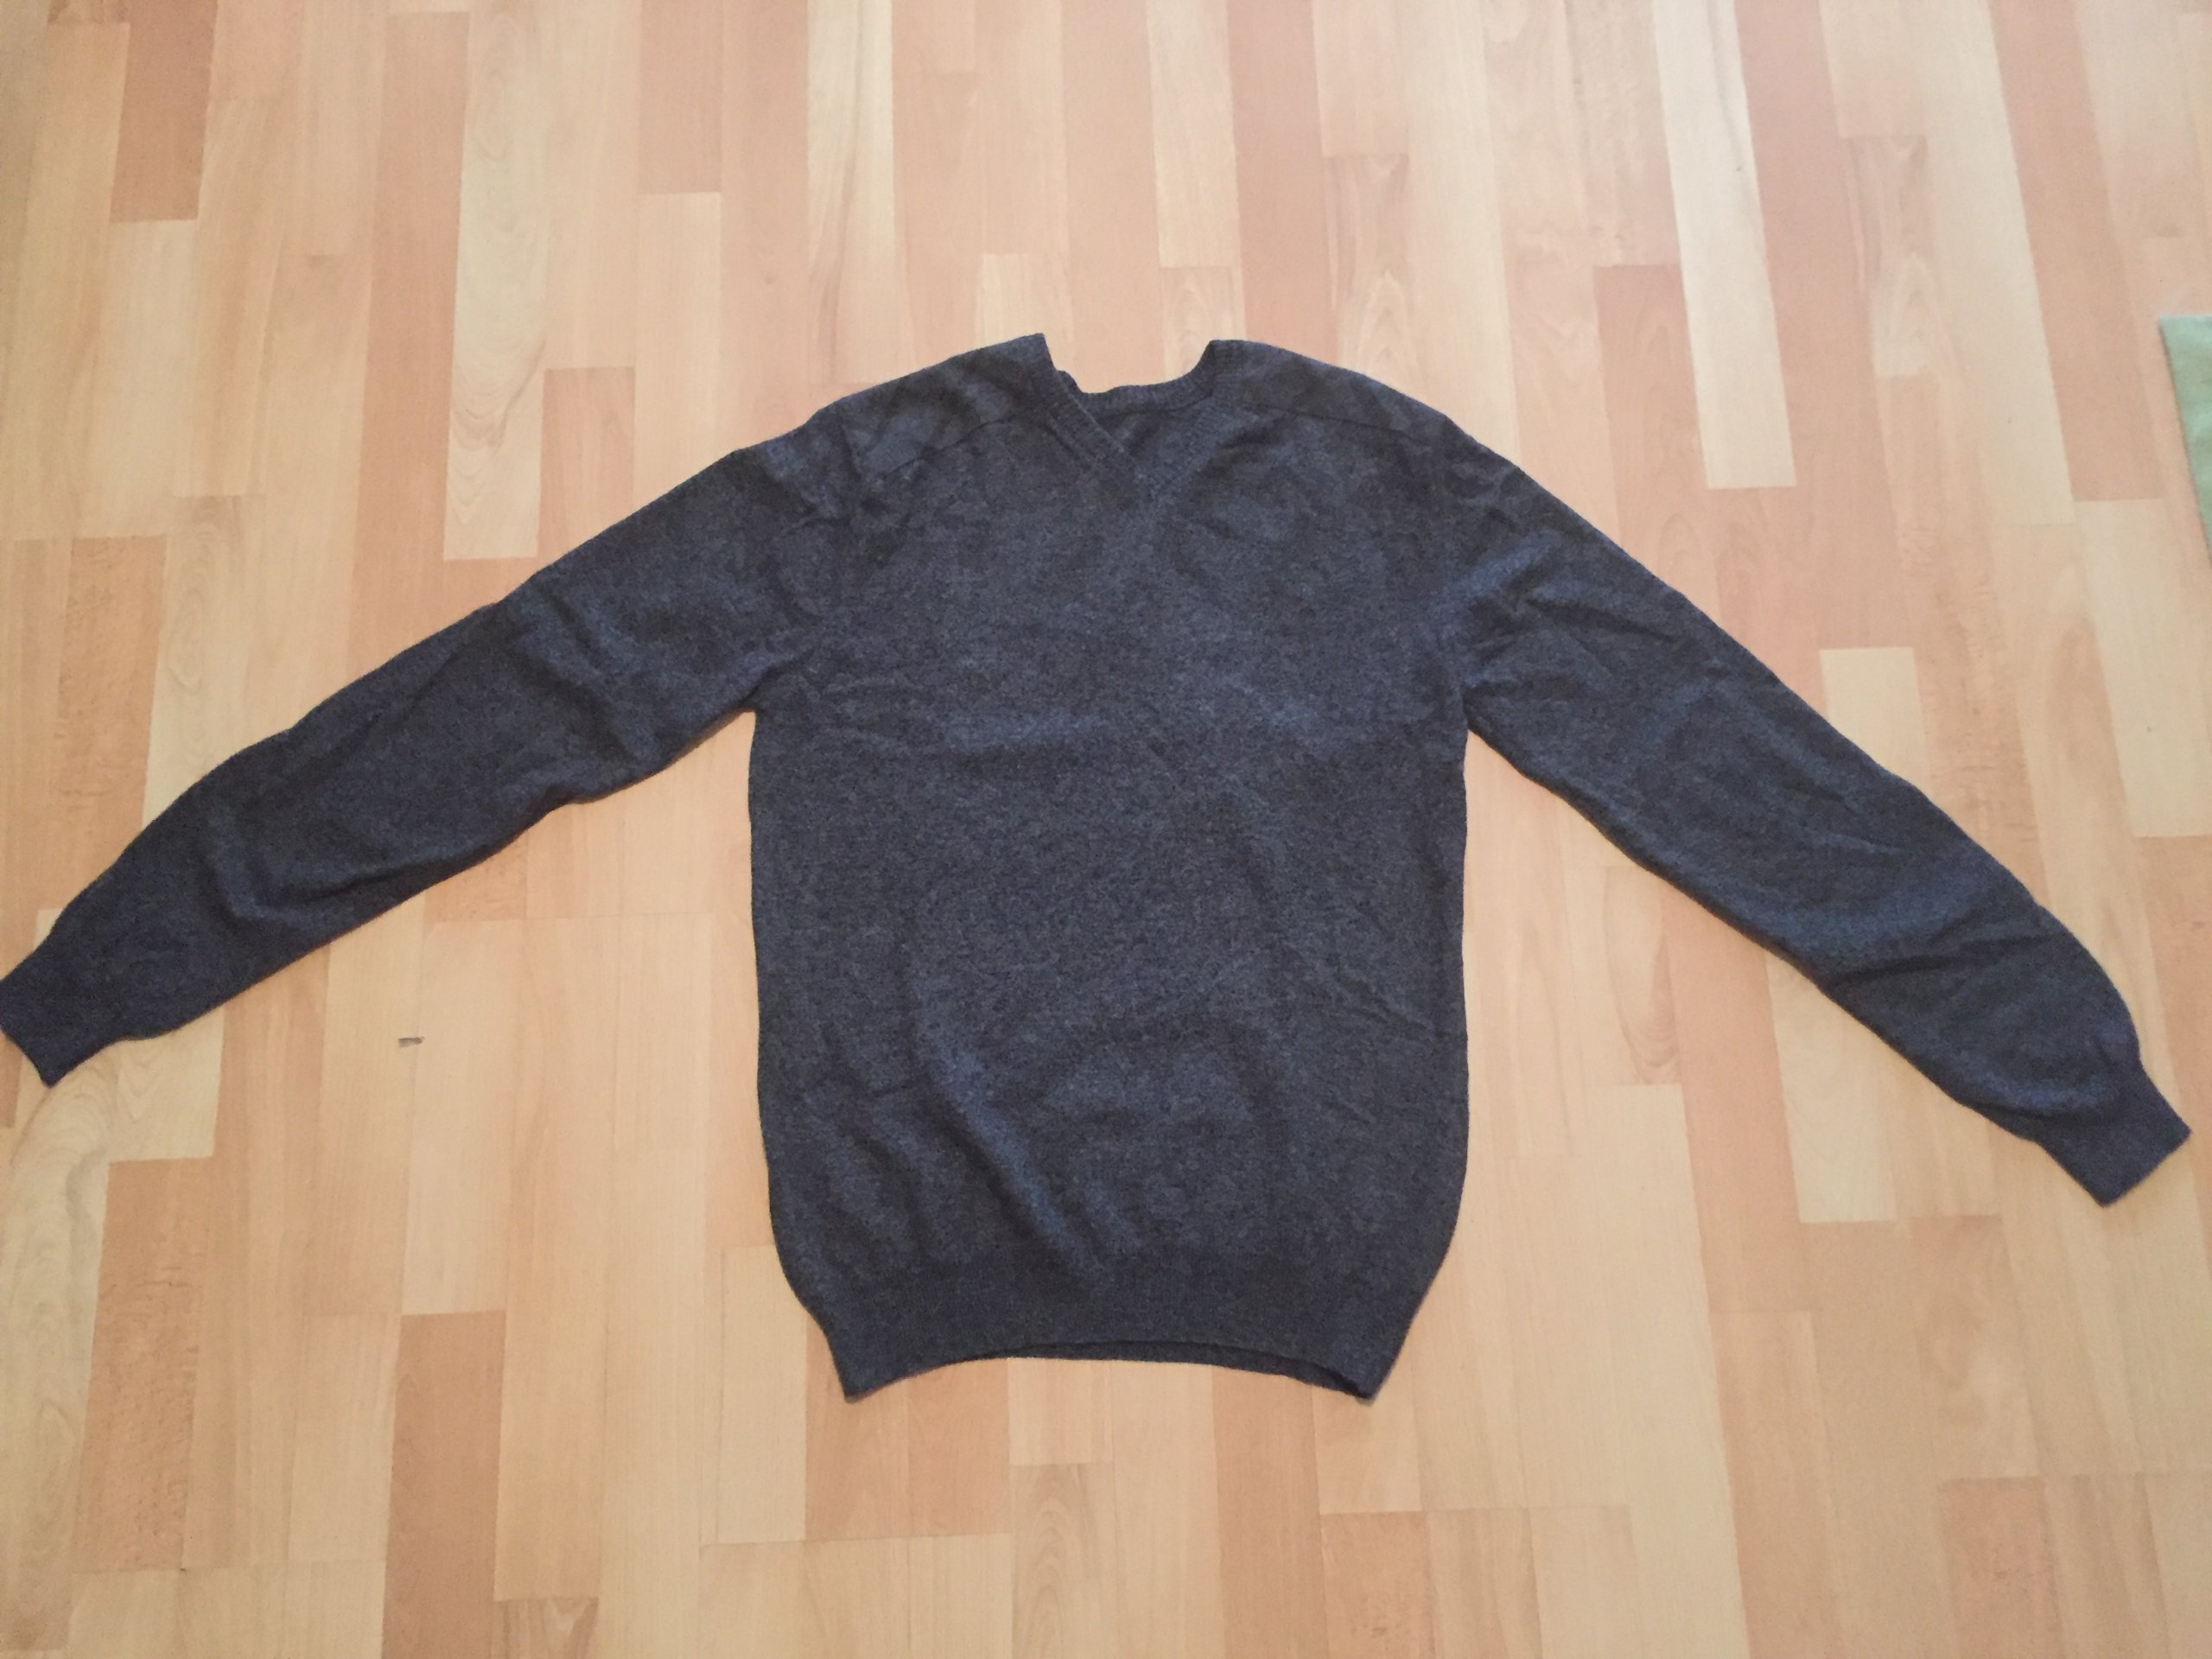 BYTOM - szary sweter, 80% wełna - rozmiar L - bdb